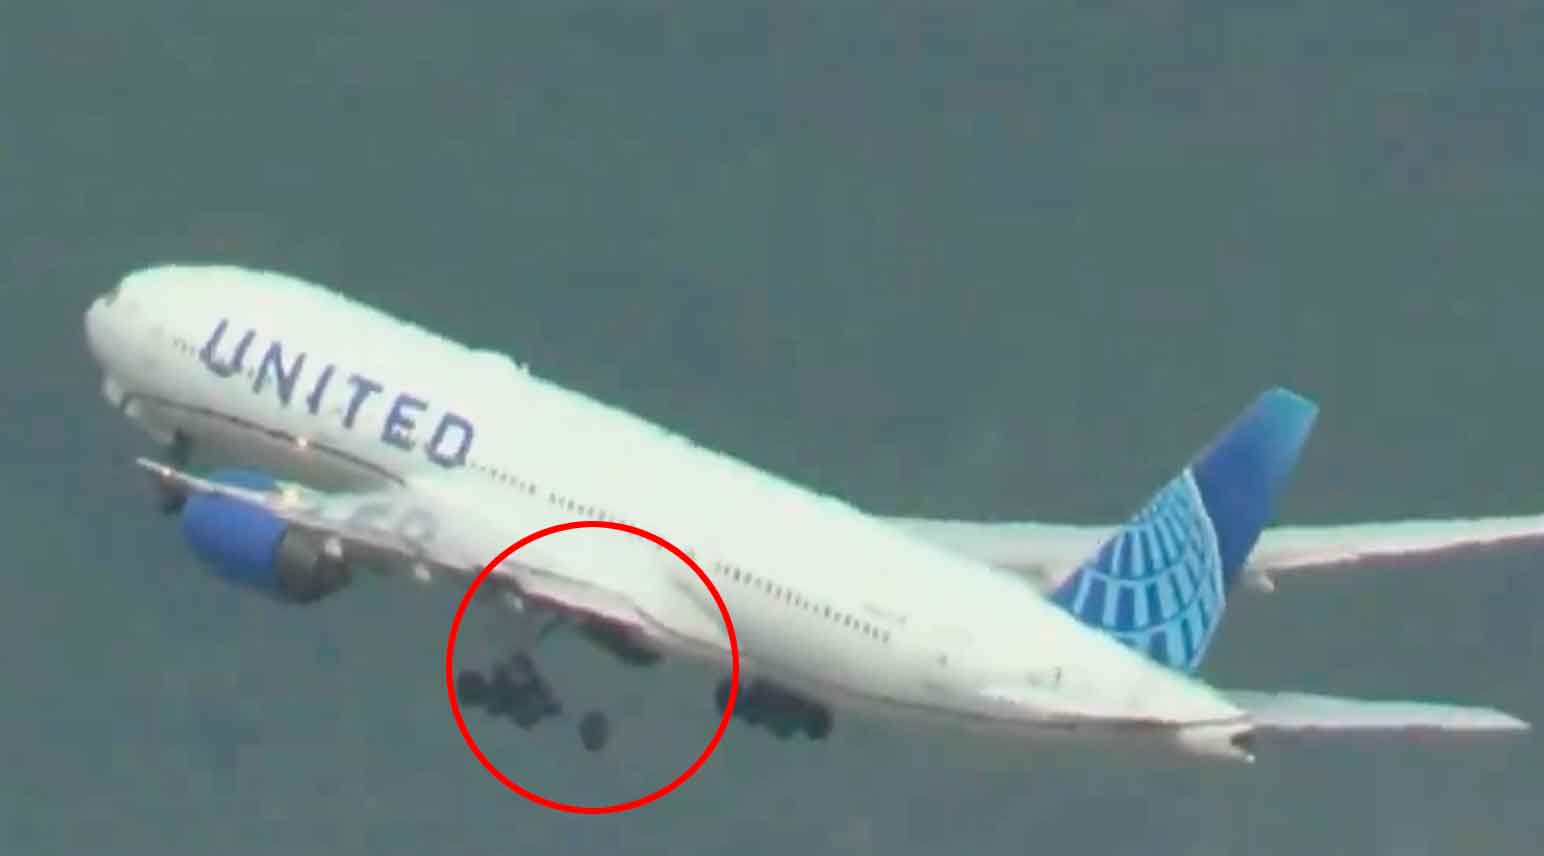 Vídeo: Boeing perde pneu durante a decolagem em São Francisco, causando danos em solo. Foto e vídeo: Reprodução Twitter @BNONews